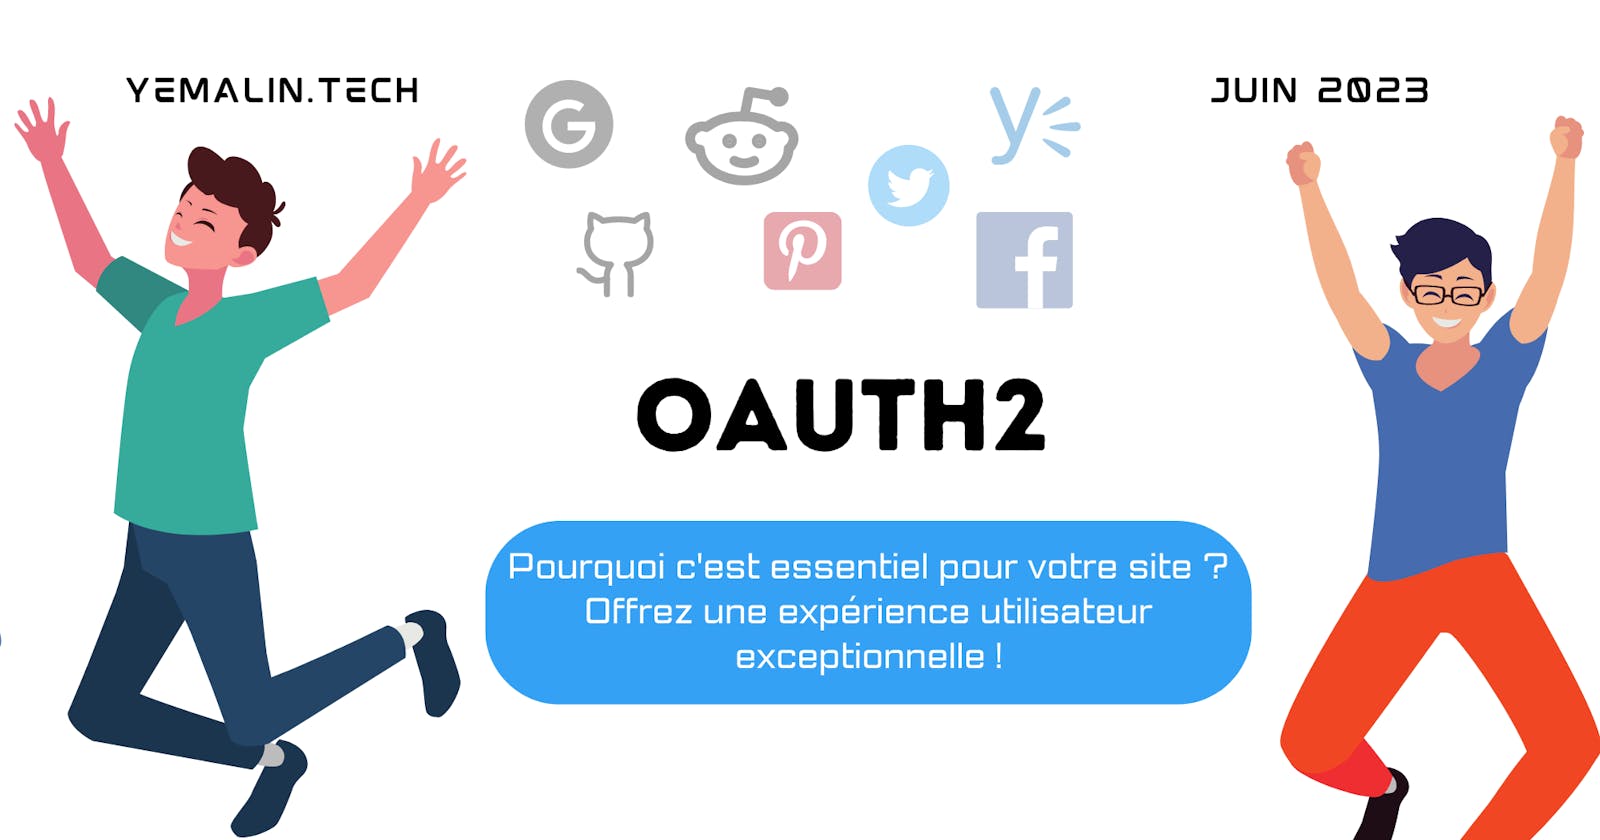 Pourquoi OAuth2 est essentiel pour votre site: Une meilleure expérience utilisateur garantie